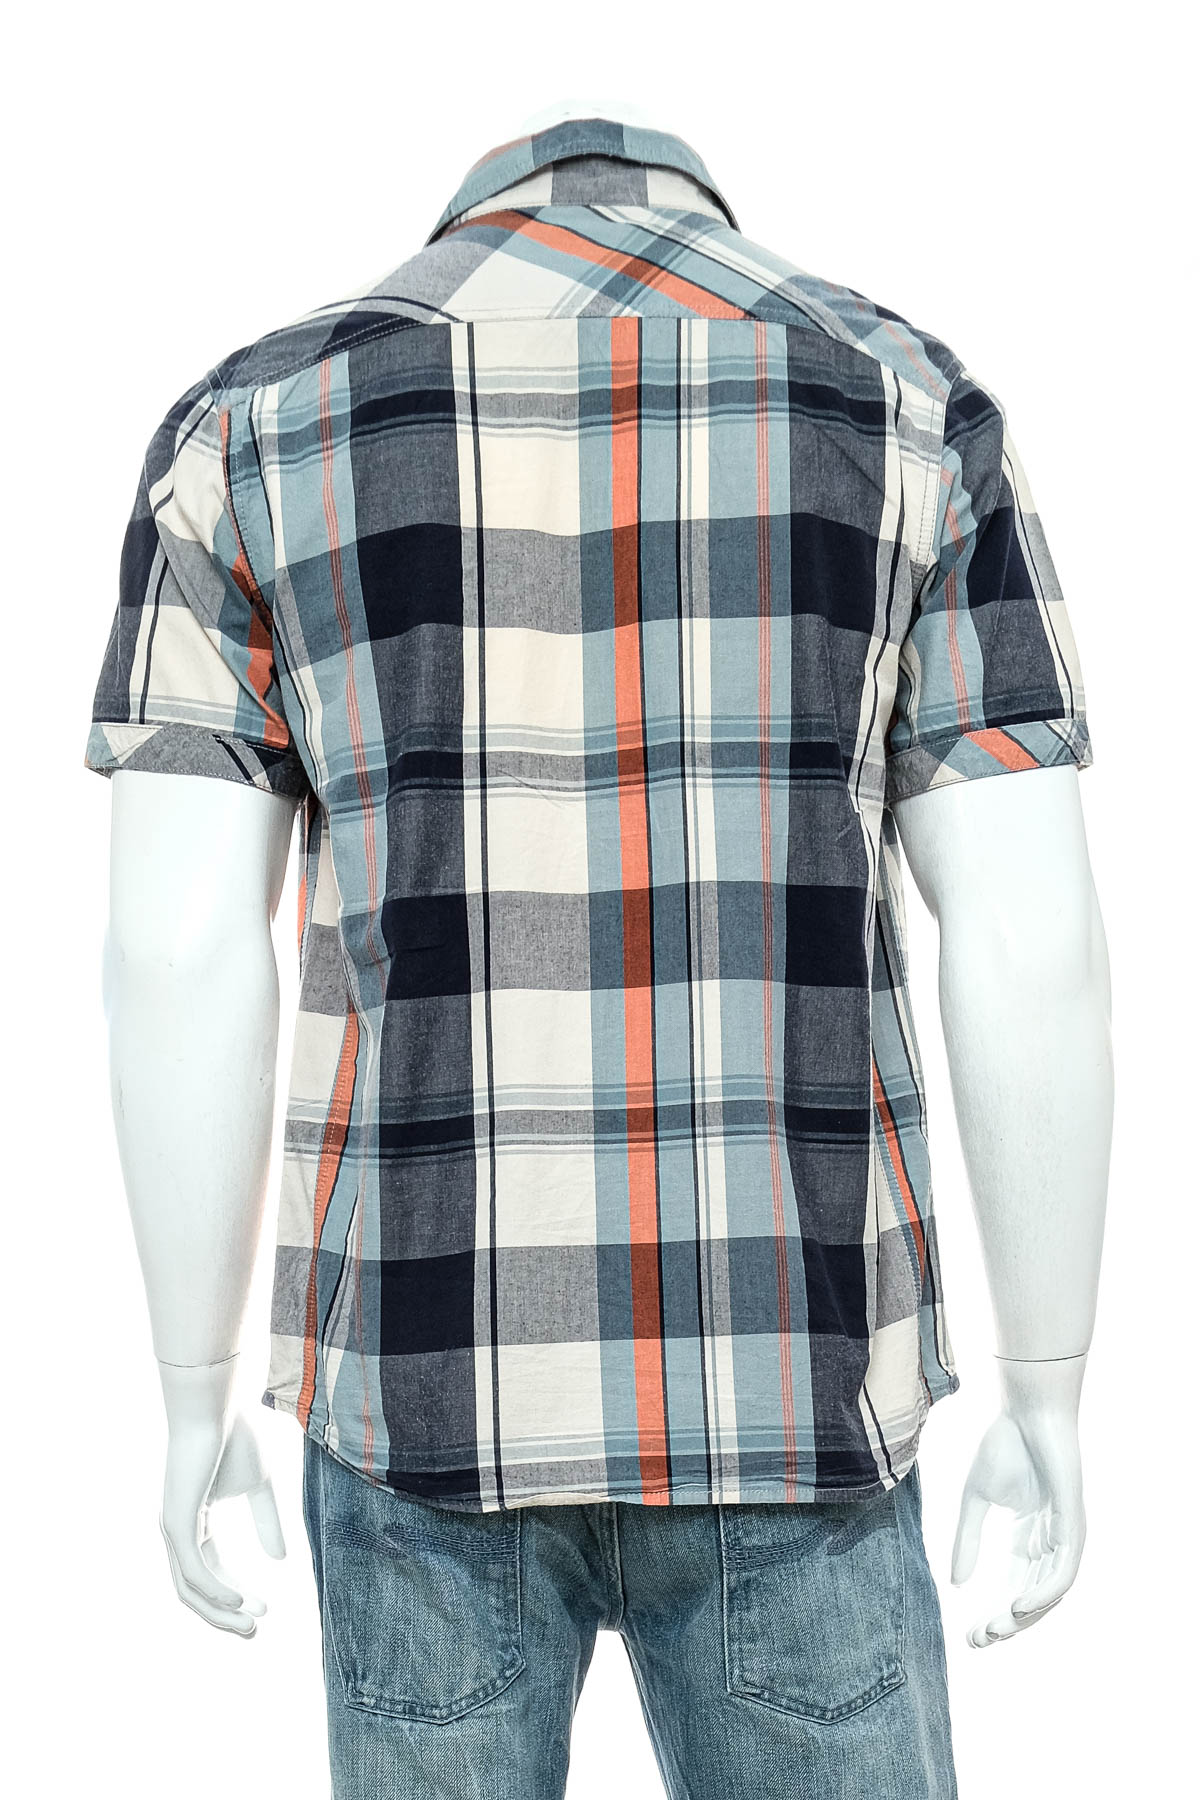 Ανδρικό πουκάμισο - Cedar Wood State - 1